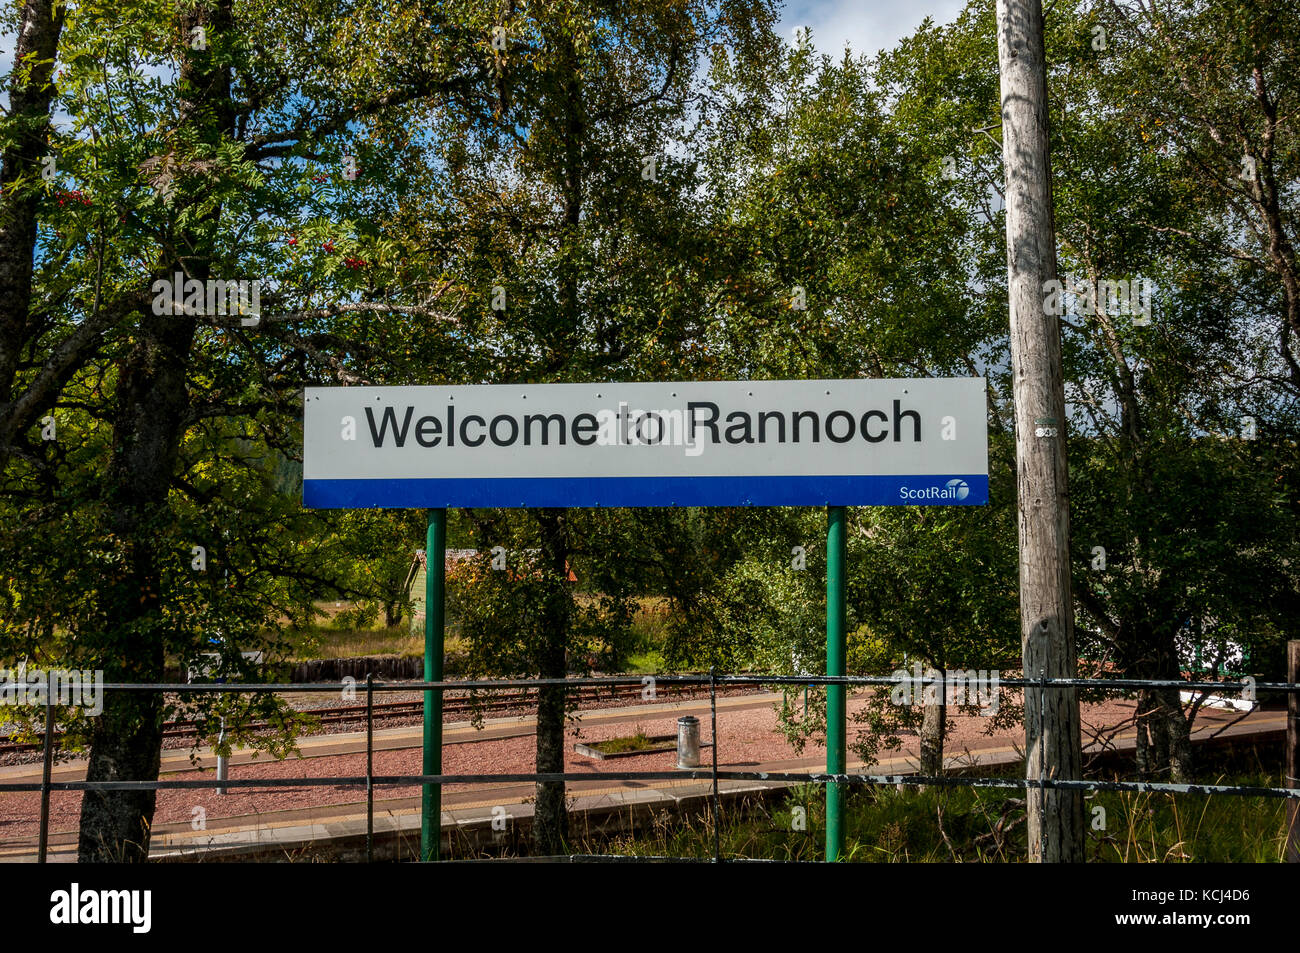 Un panneau blanc avec des lettres noires dire Bienvenue à Rannach se place en avant des arbres masquant partiellement le soleil lumineux railway station Banque D'Images